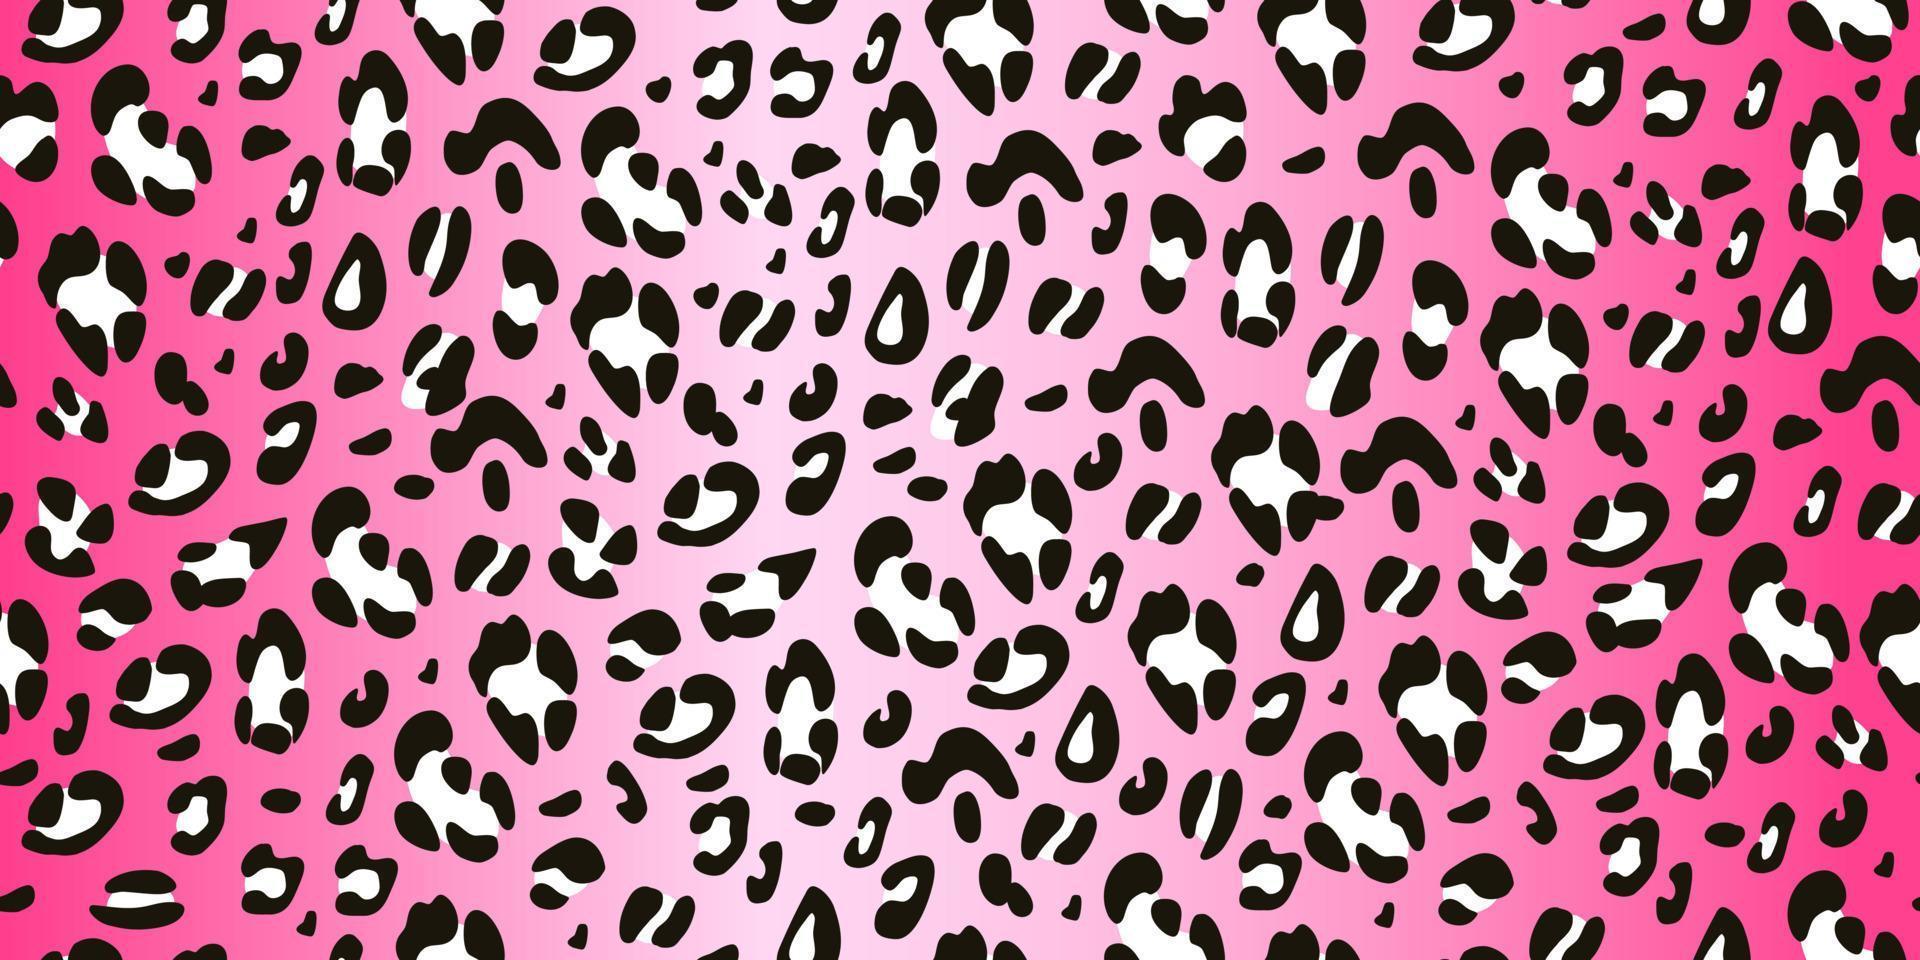 patrón de leopardo blanco y negro sobre fondo rosa patrón sin costuras. fondo animal dibujado a mano. ilustración vectorial vector